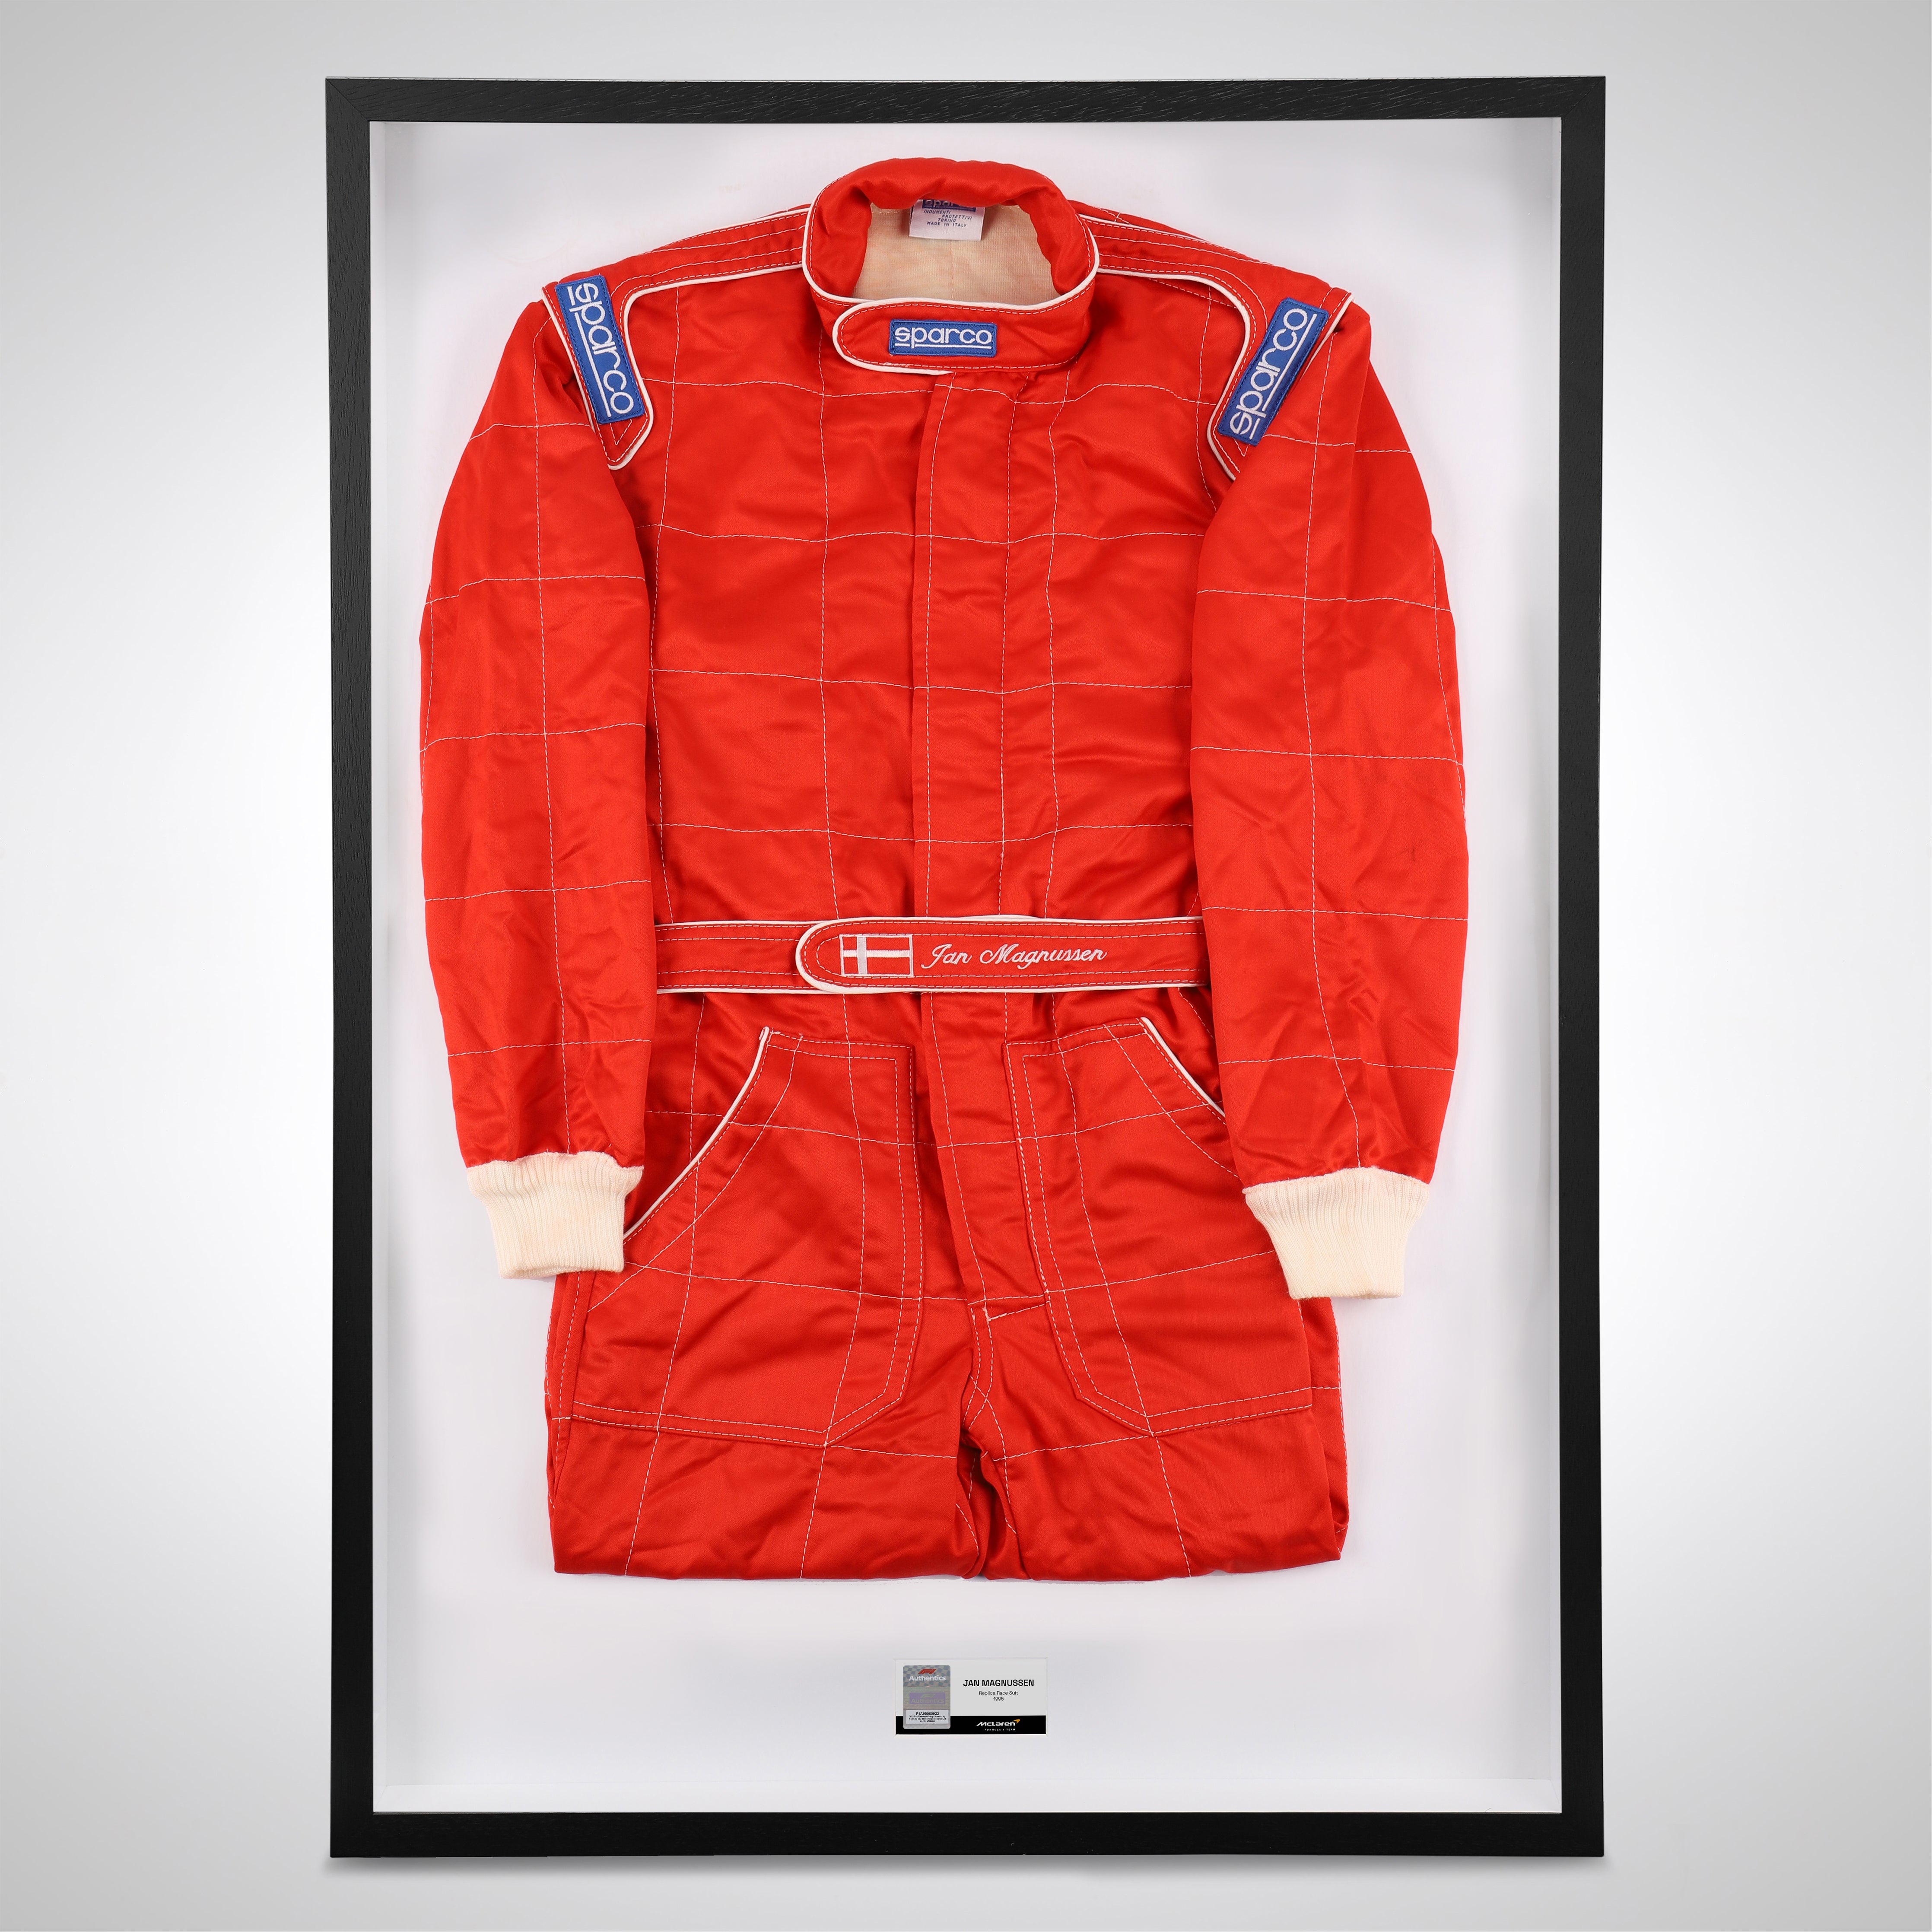 Jan Magnussen 1995 Replica McLaren F1 Team Race Suit